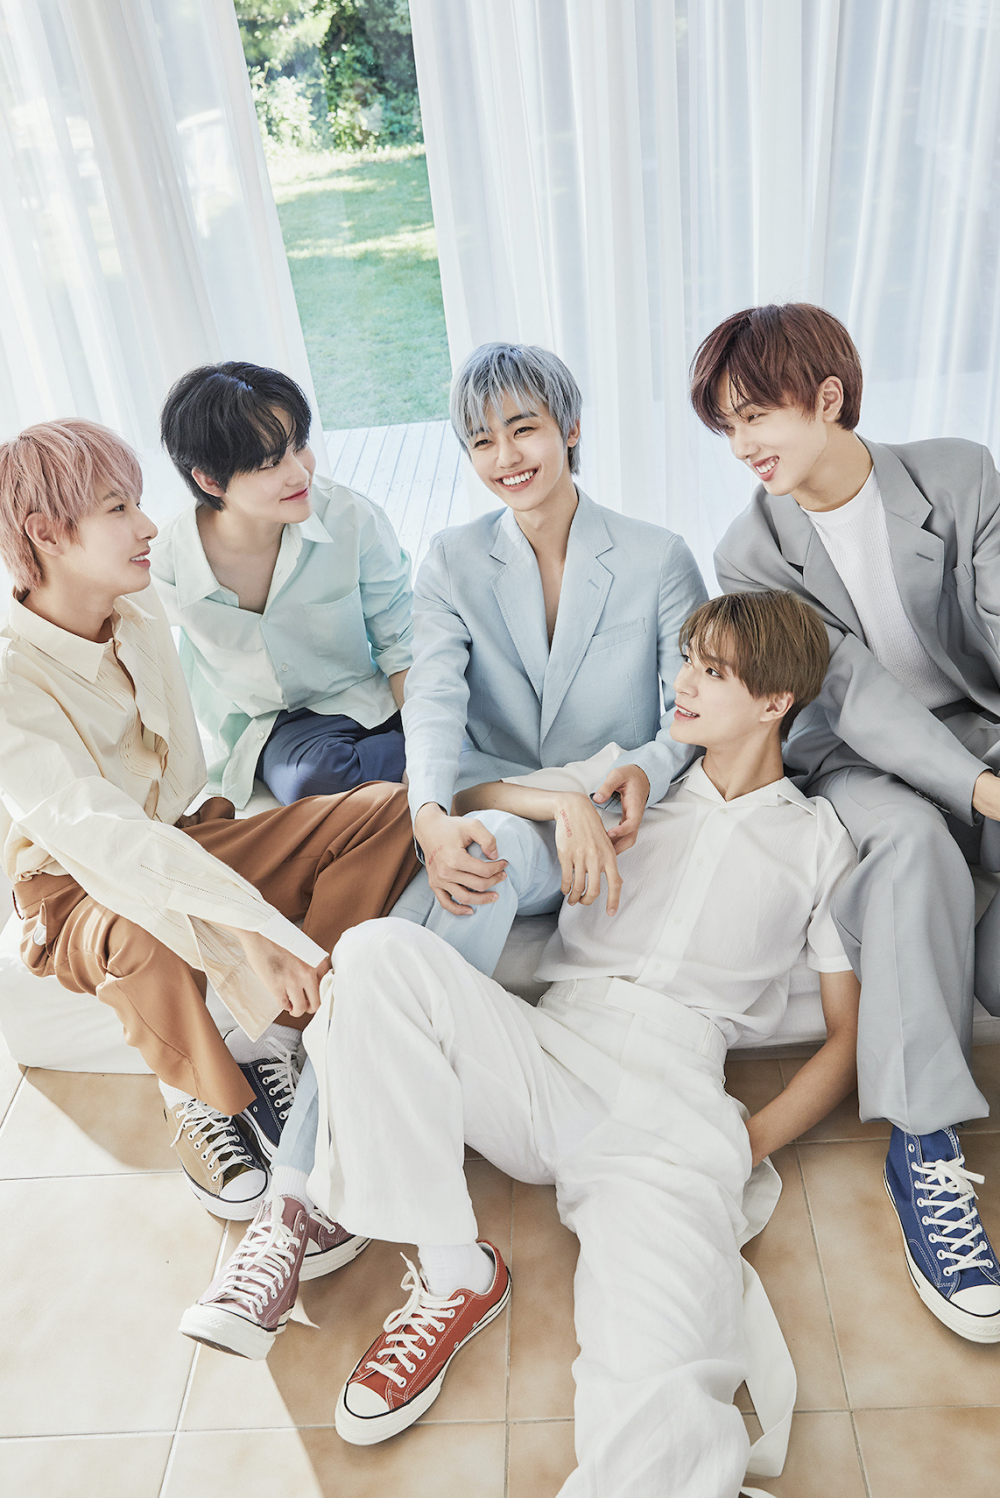 CANDYLAB объявили NCT Dream своими первыми рекламными моделями